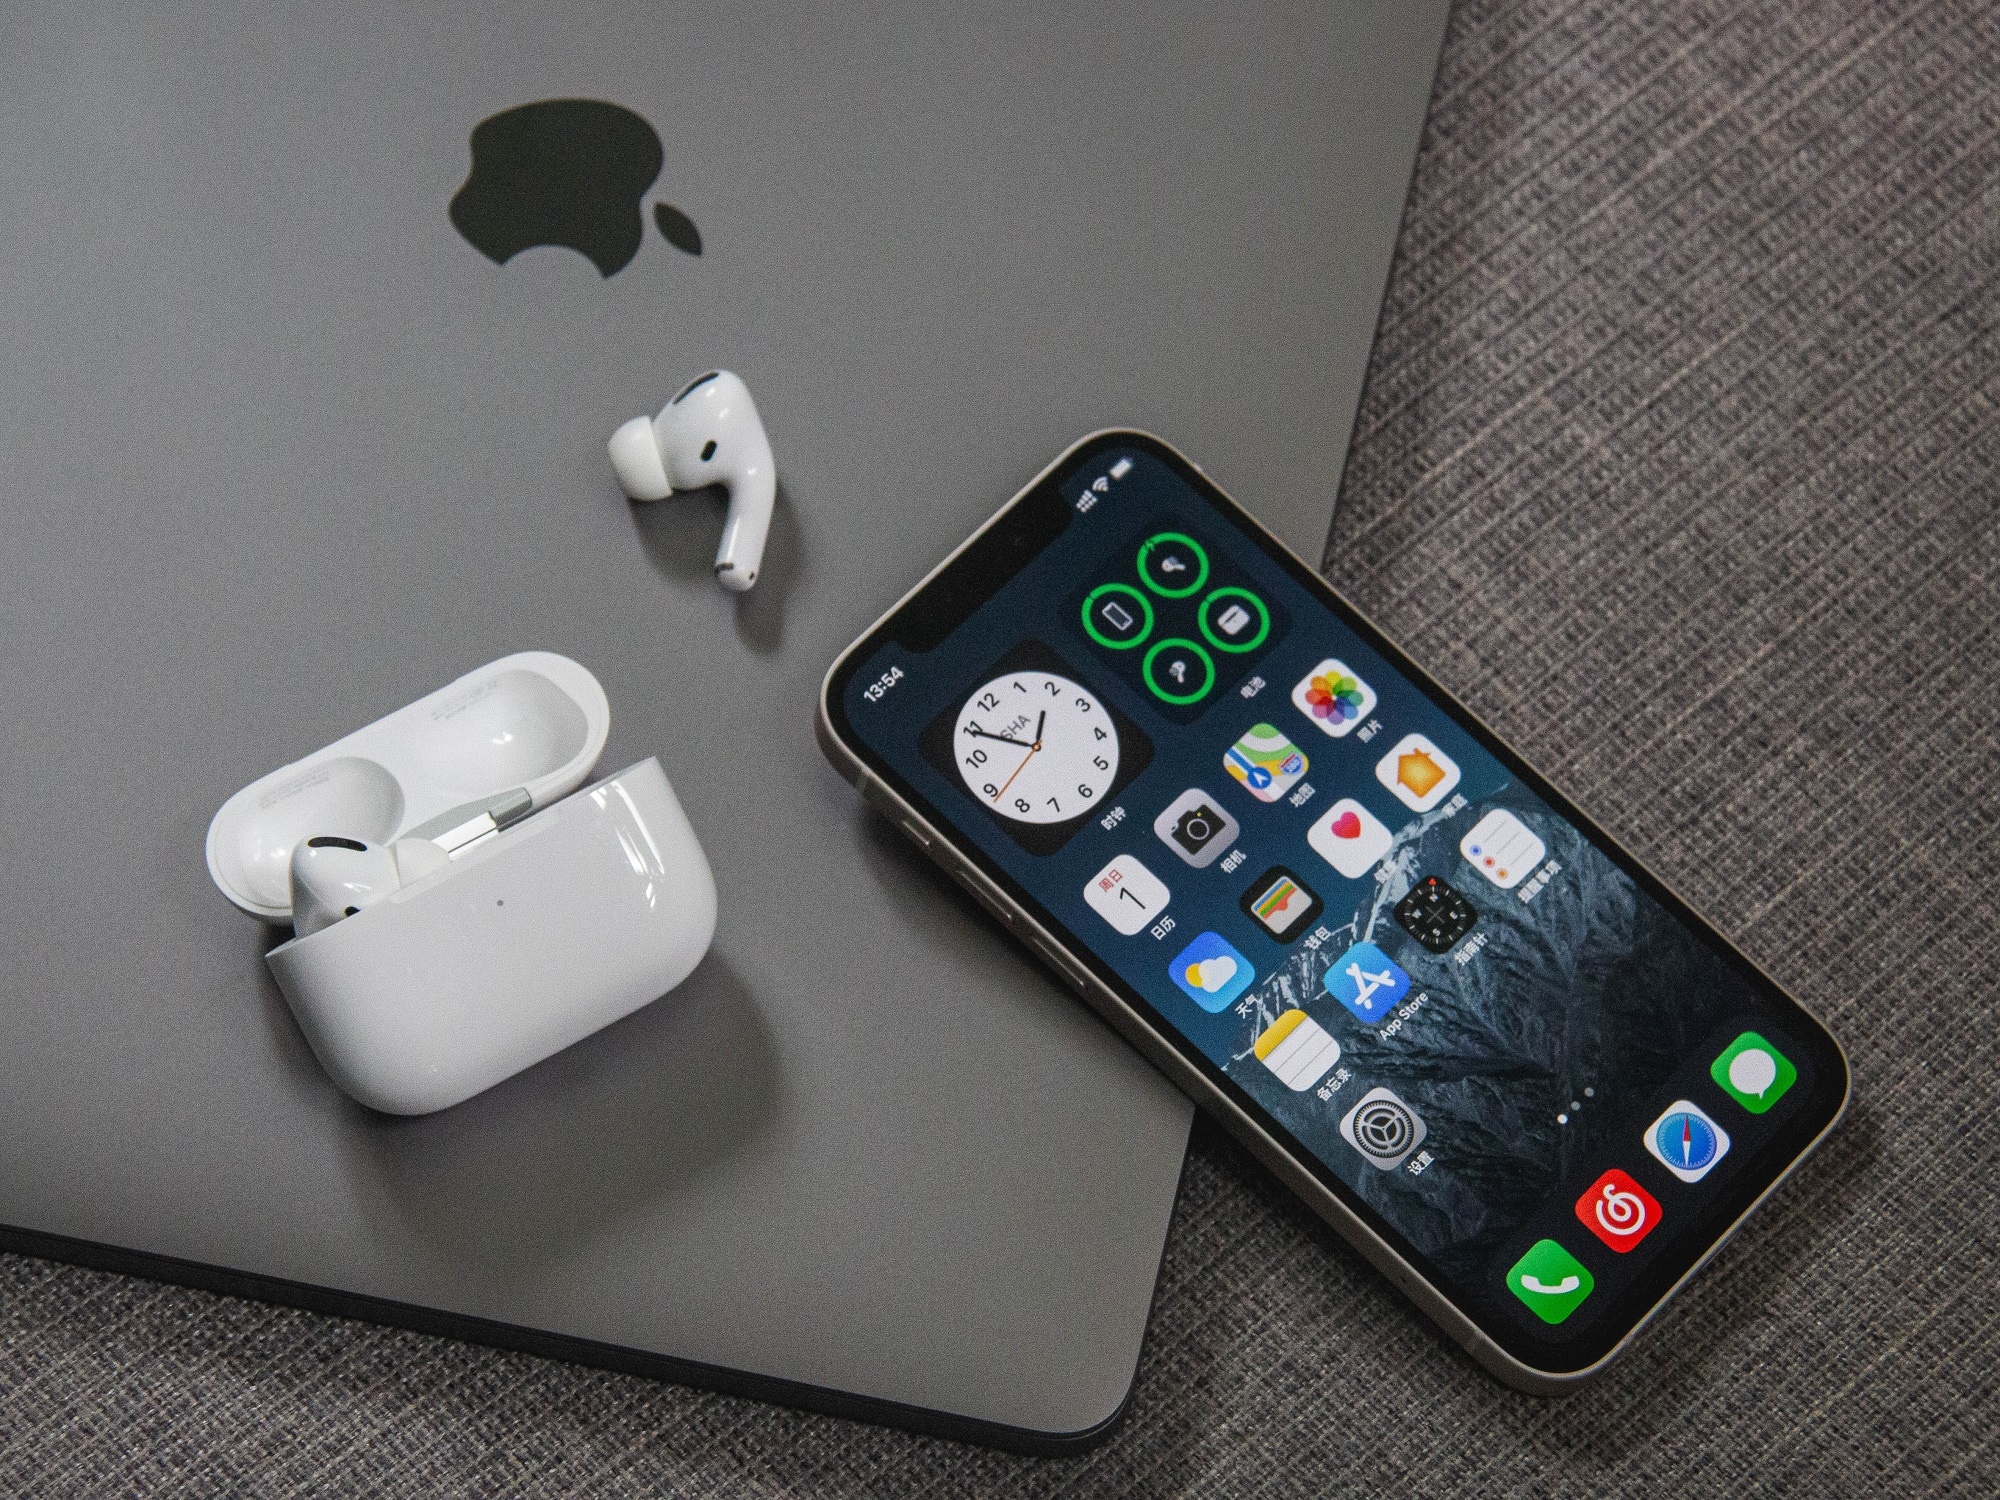 L'iPhone offre une fonction de dictée vocale intégrée pour améliorer votre productivité